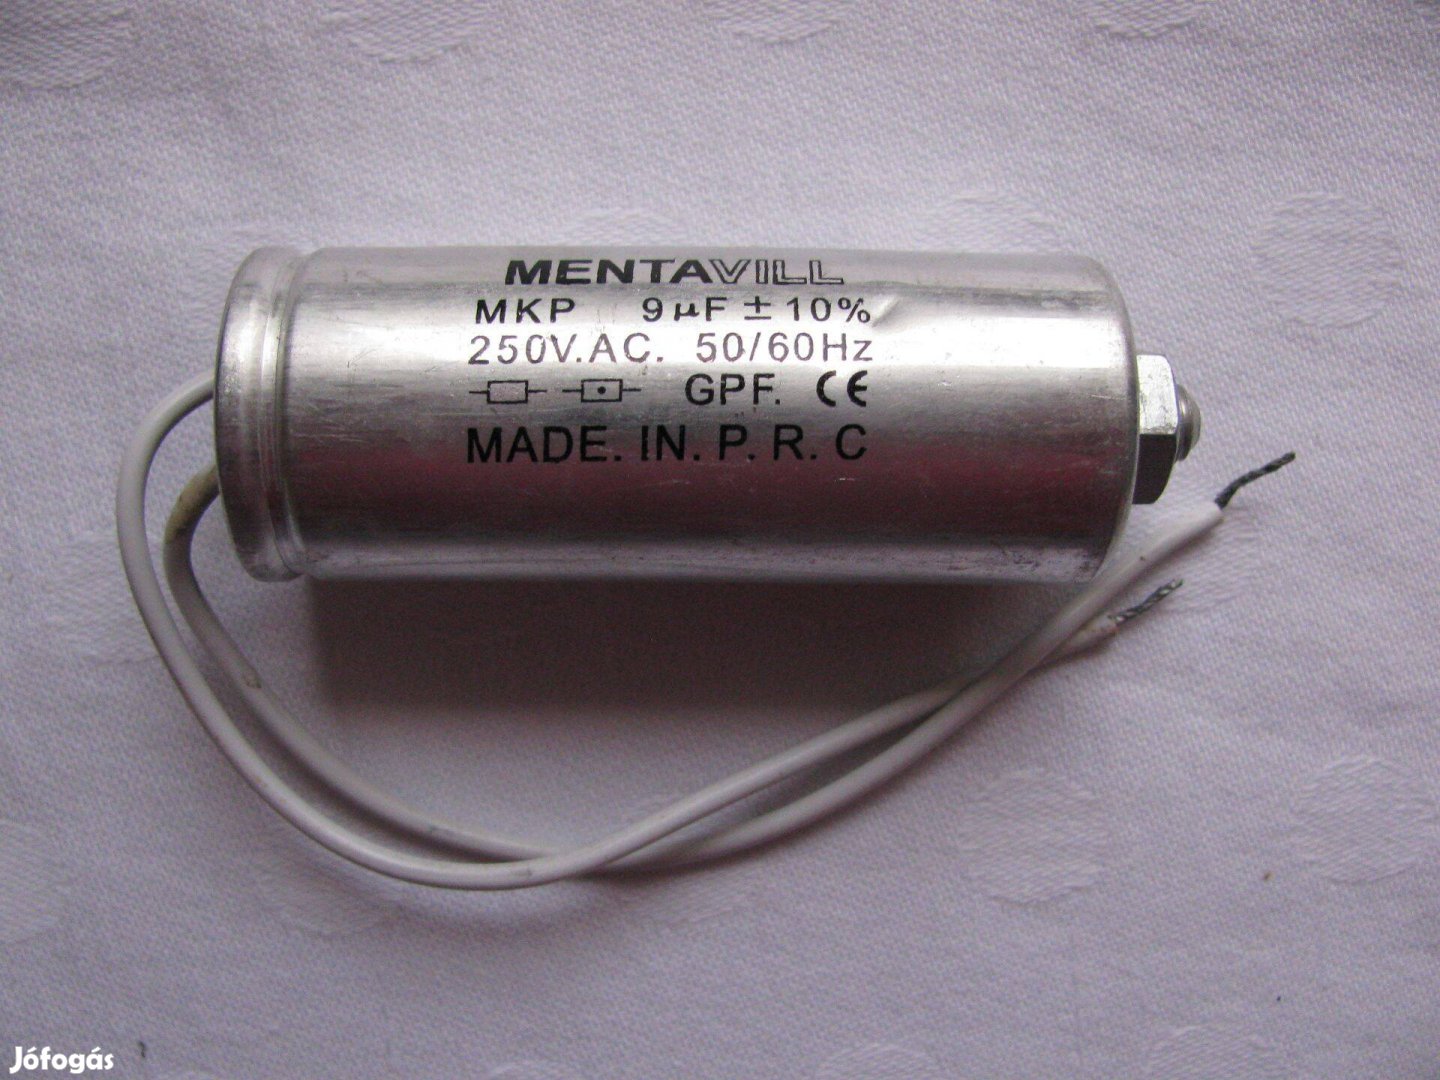 Fázisjavító kondenzátor MKP típus